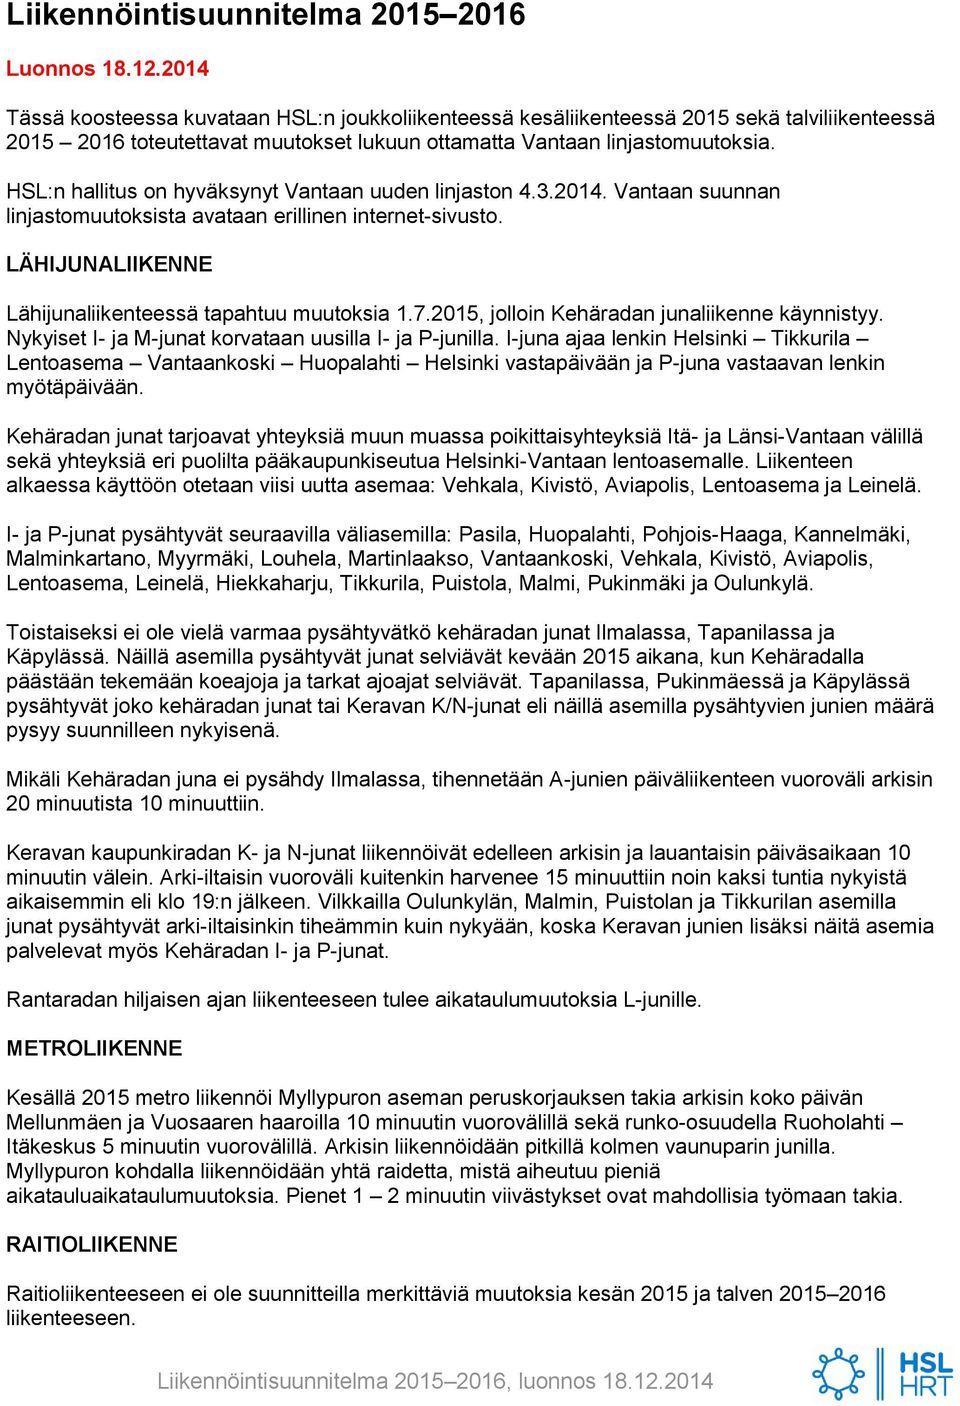 HSL:n hallitus on hyväksynyt Vantaan uuden linjaston 4.3.2014. Vantaan suunnan linjastomuutoksista avataan erillinen internet-sivusto. LÄHIJUNALIIKENNE Lähijunaliikenteessä tapahtuu muutoksia 1.7.